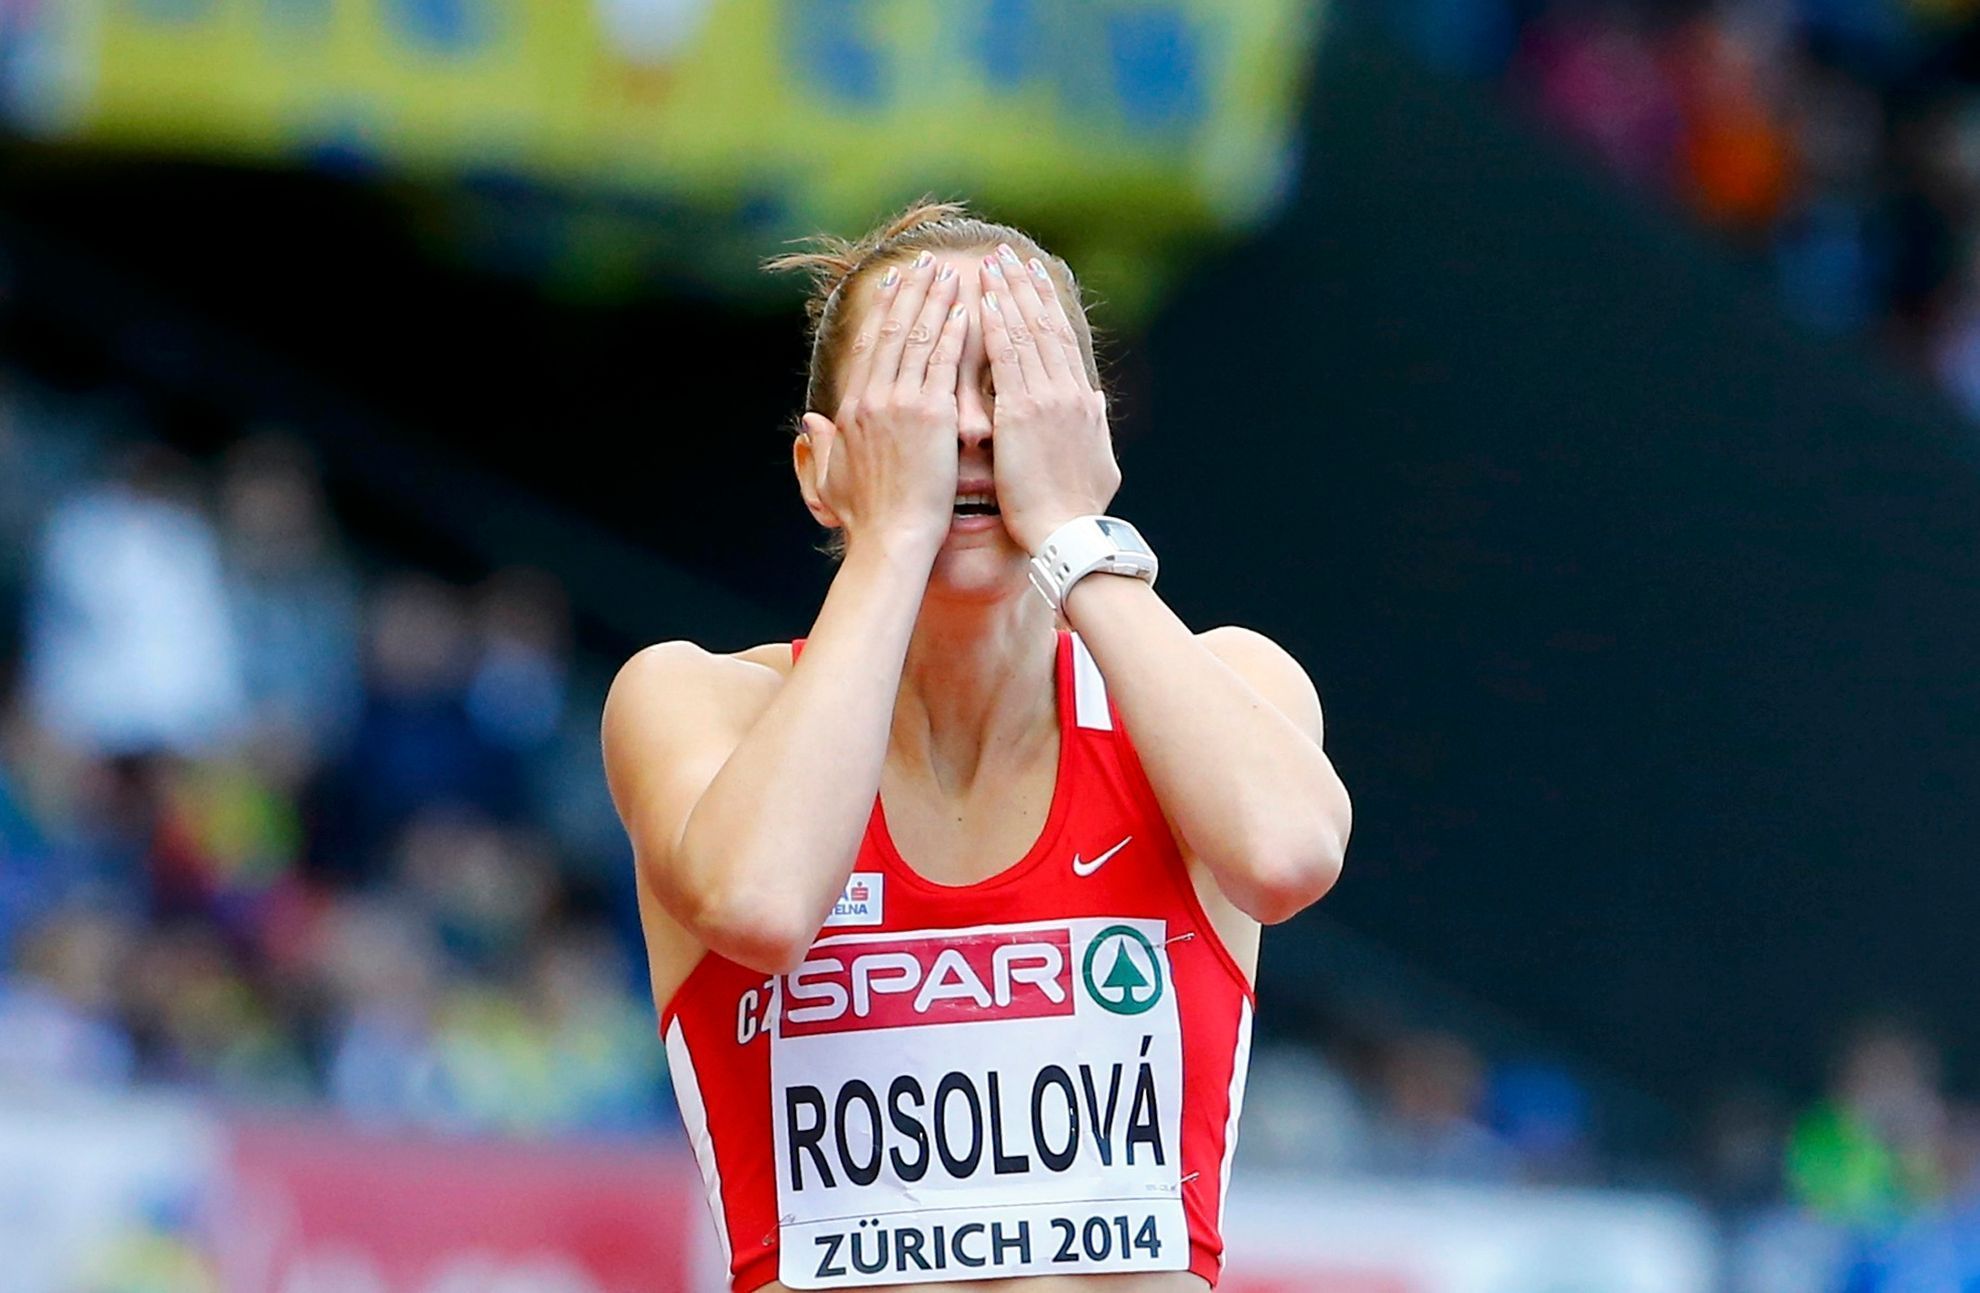 ME v atletice 2014, 400 m př.: Denisa Rosolová